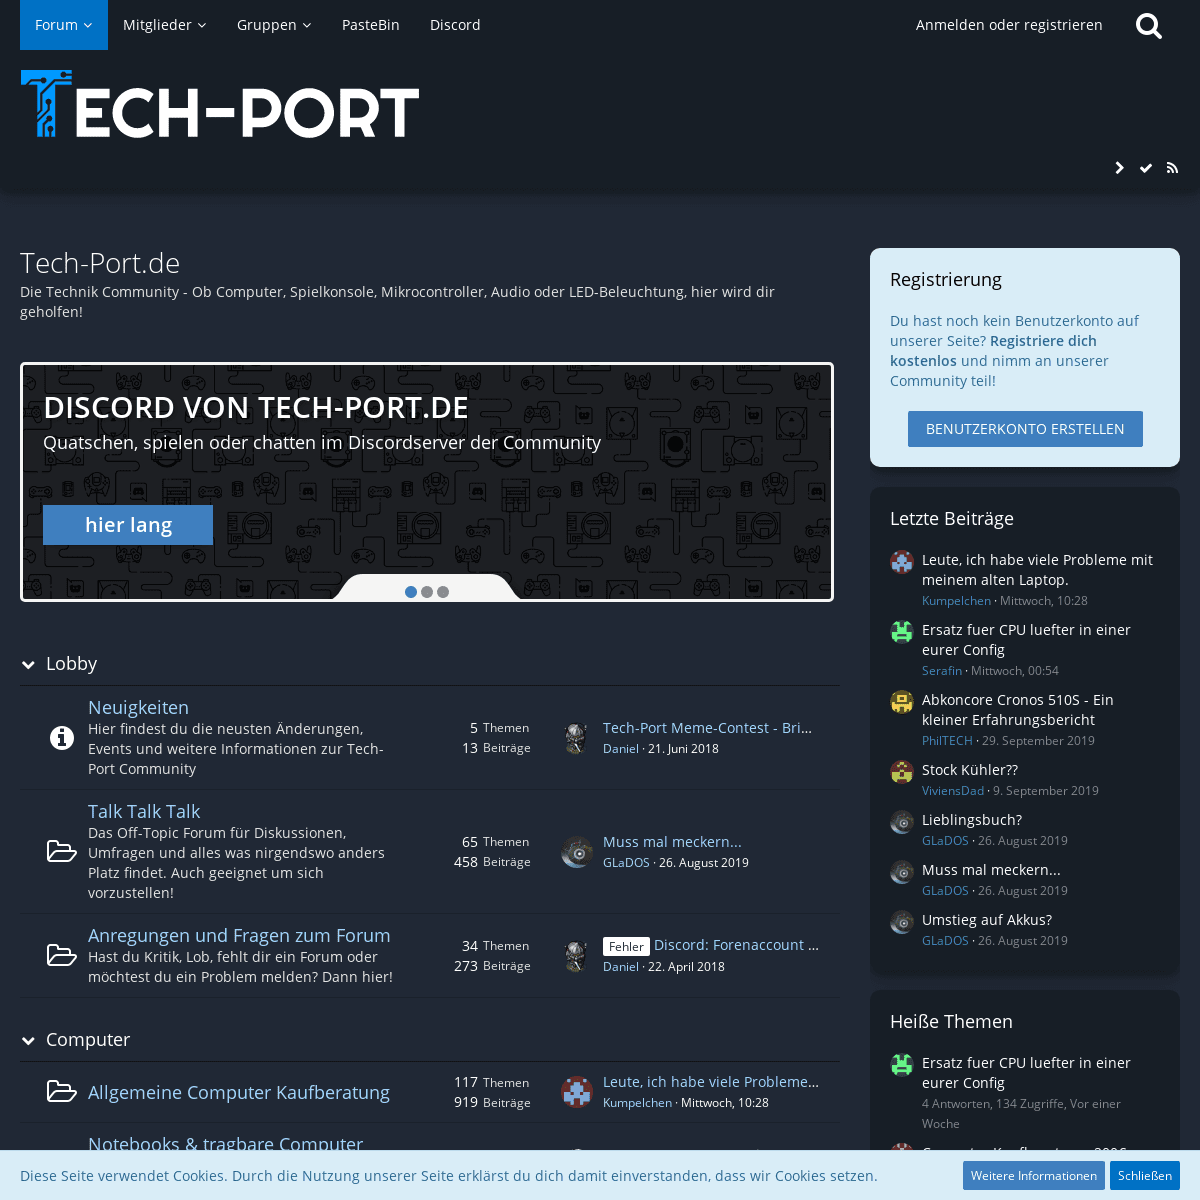 A complete backup of tech-port.de